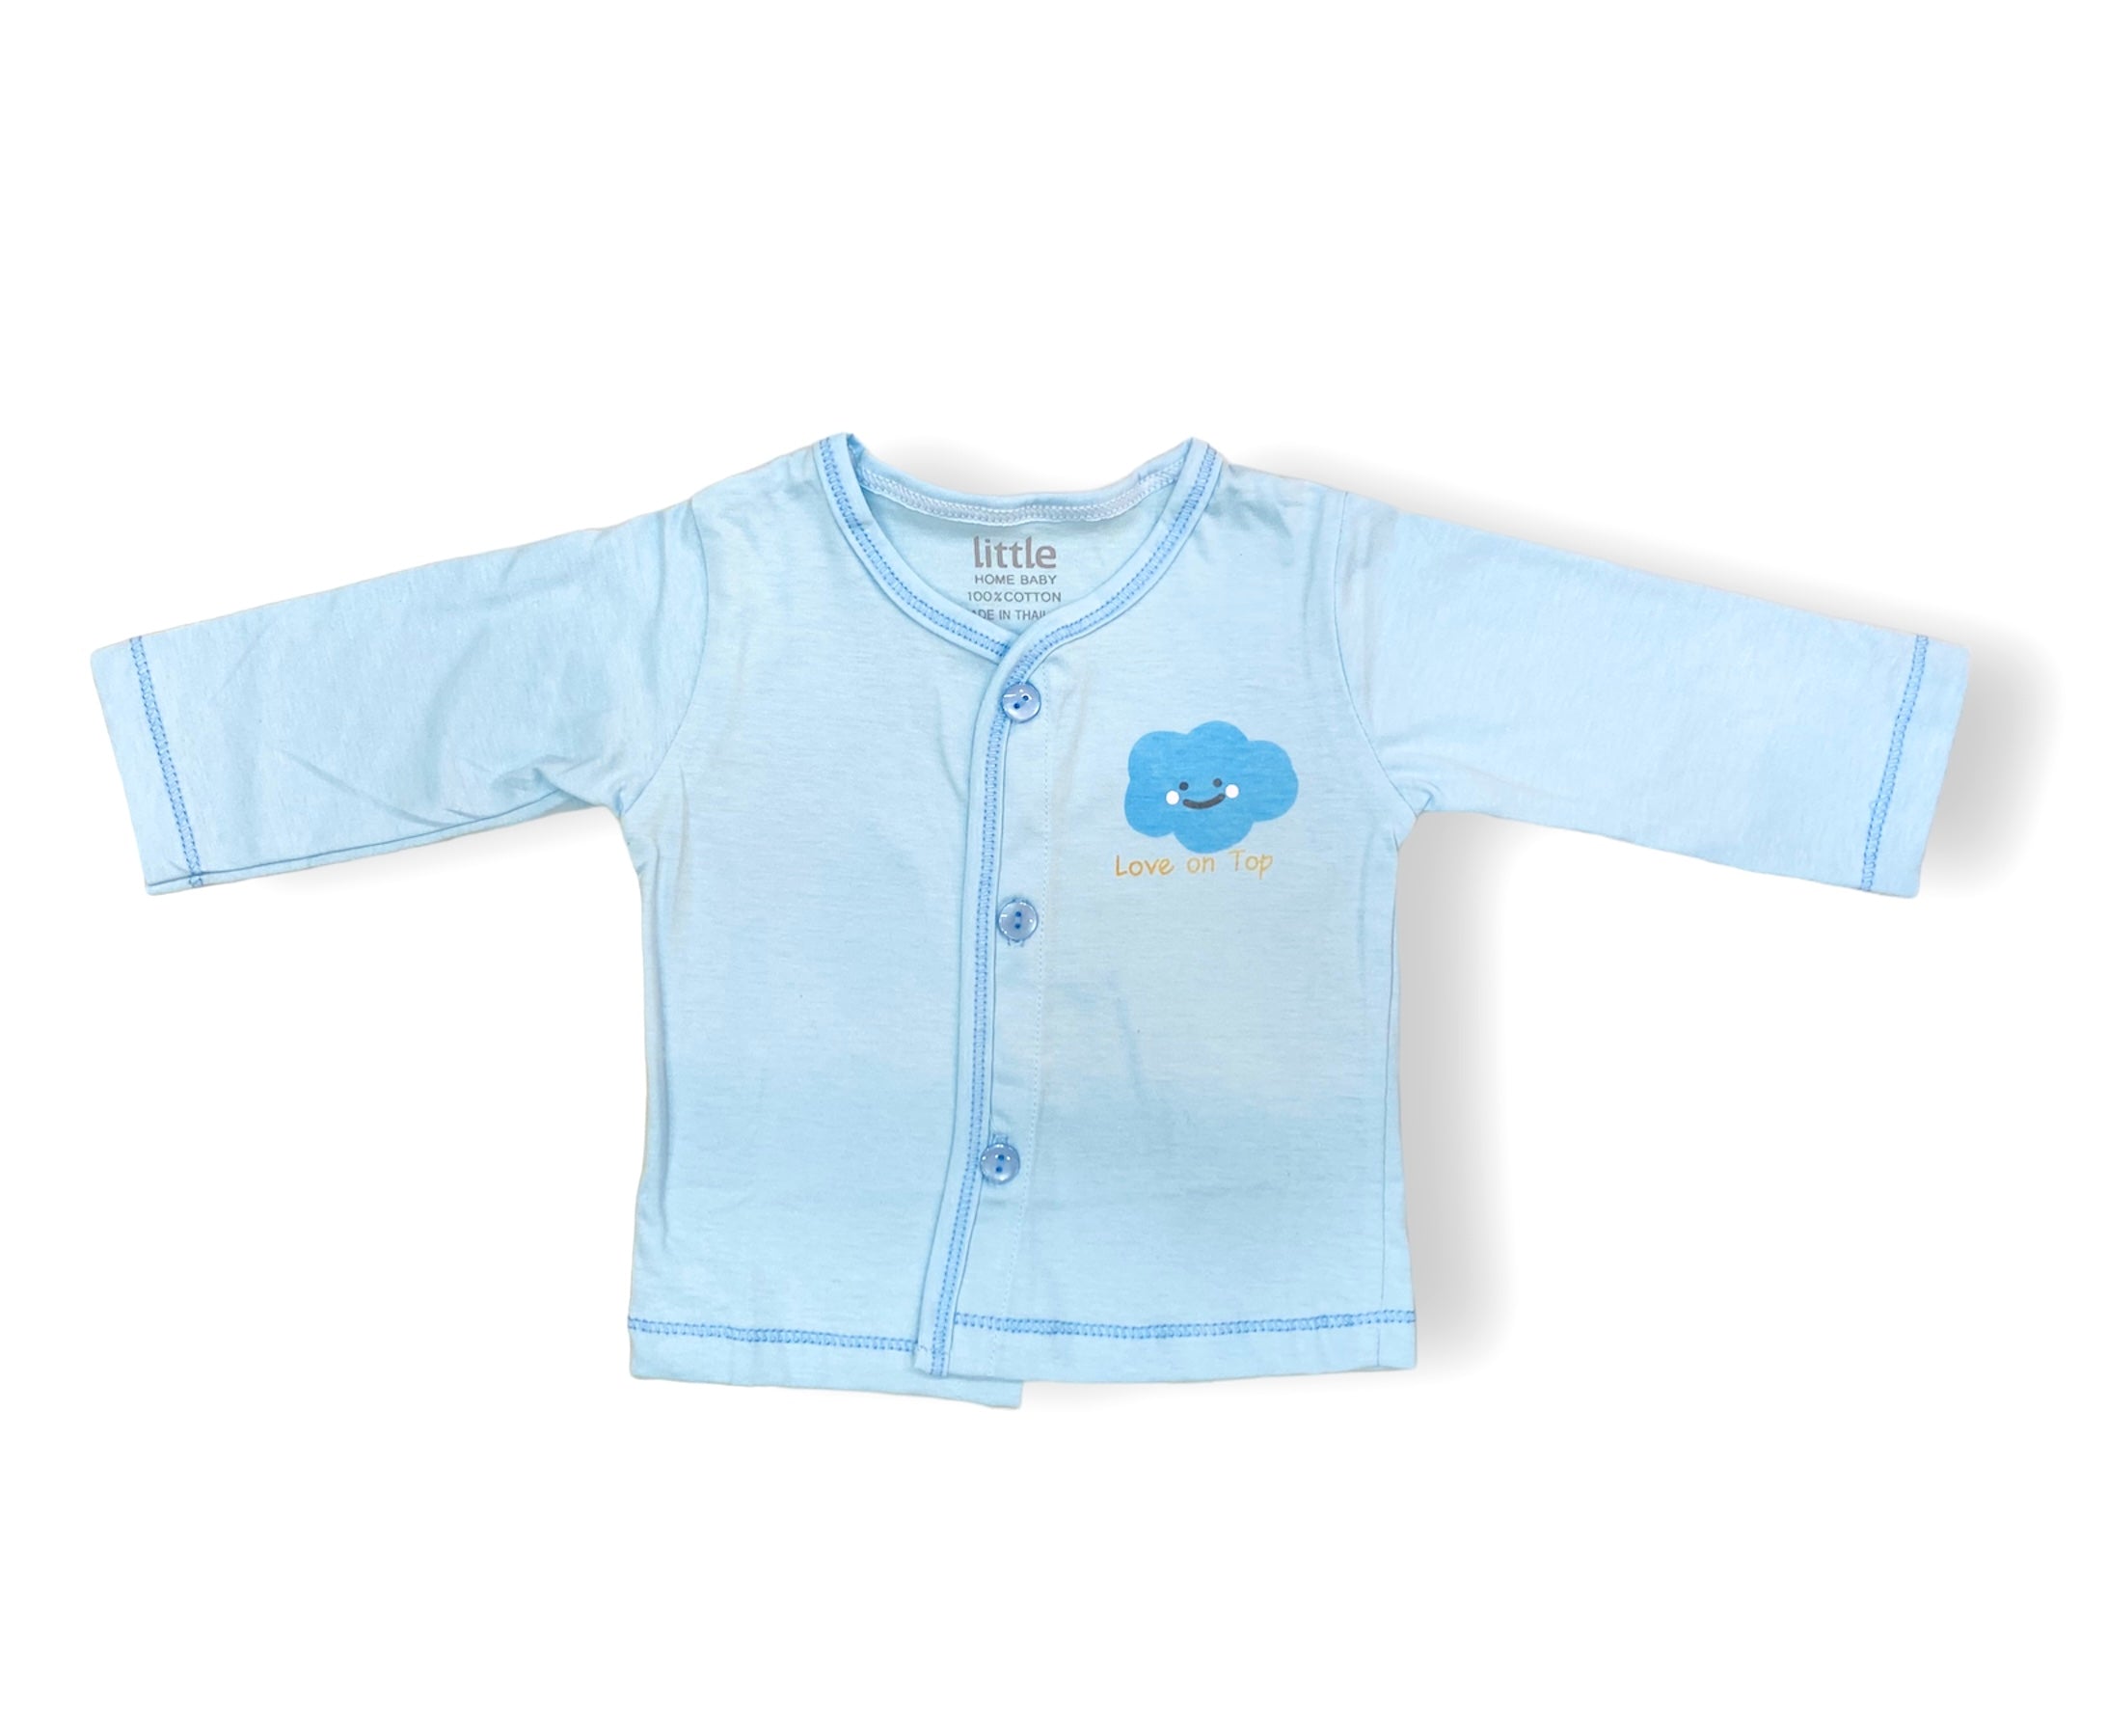 Blue Cloud Newborn Pajama Suit / Night Suit